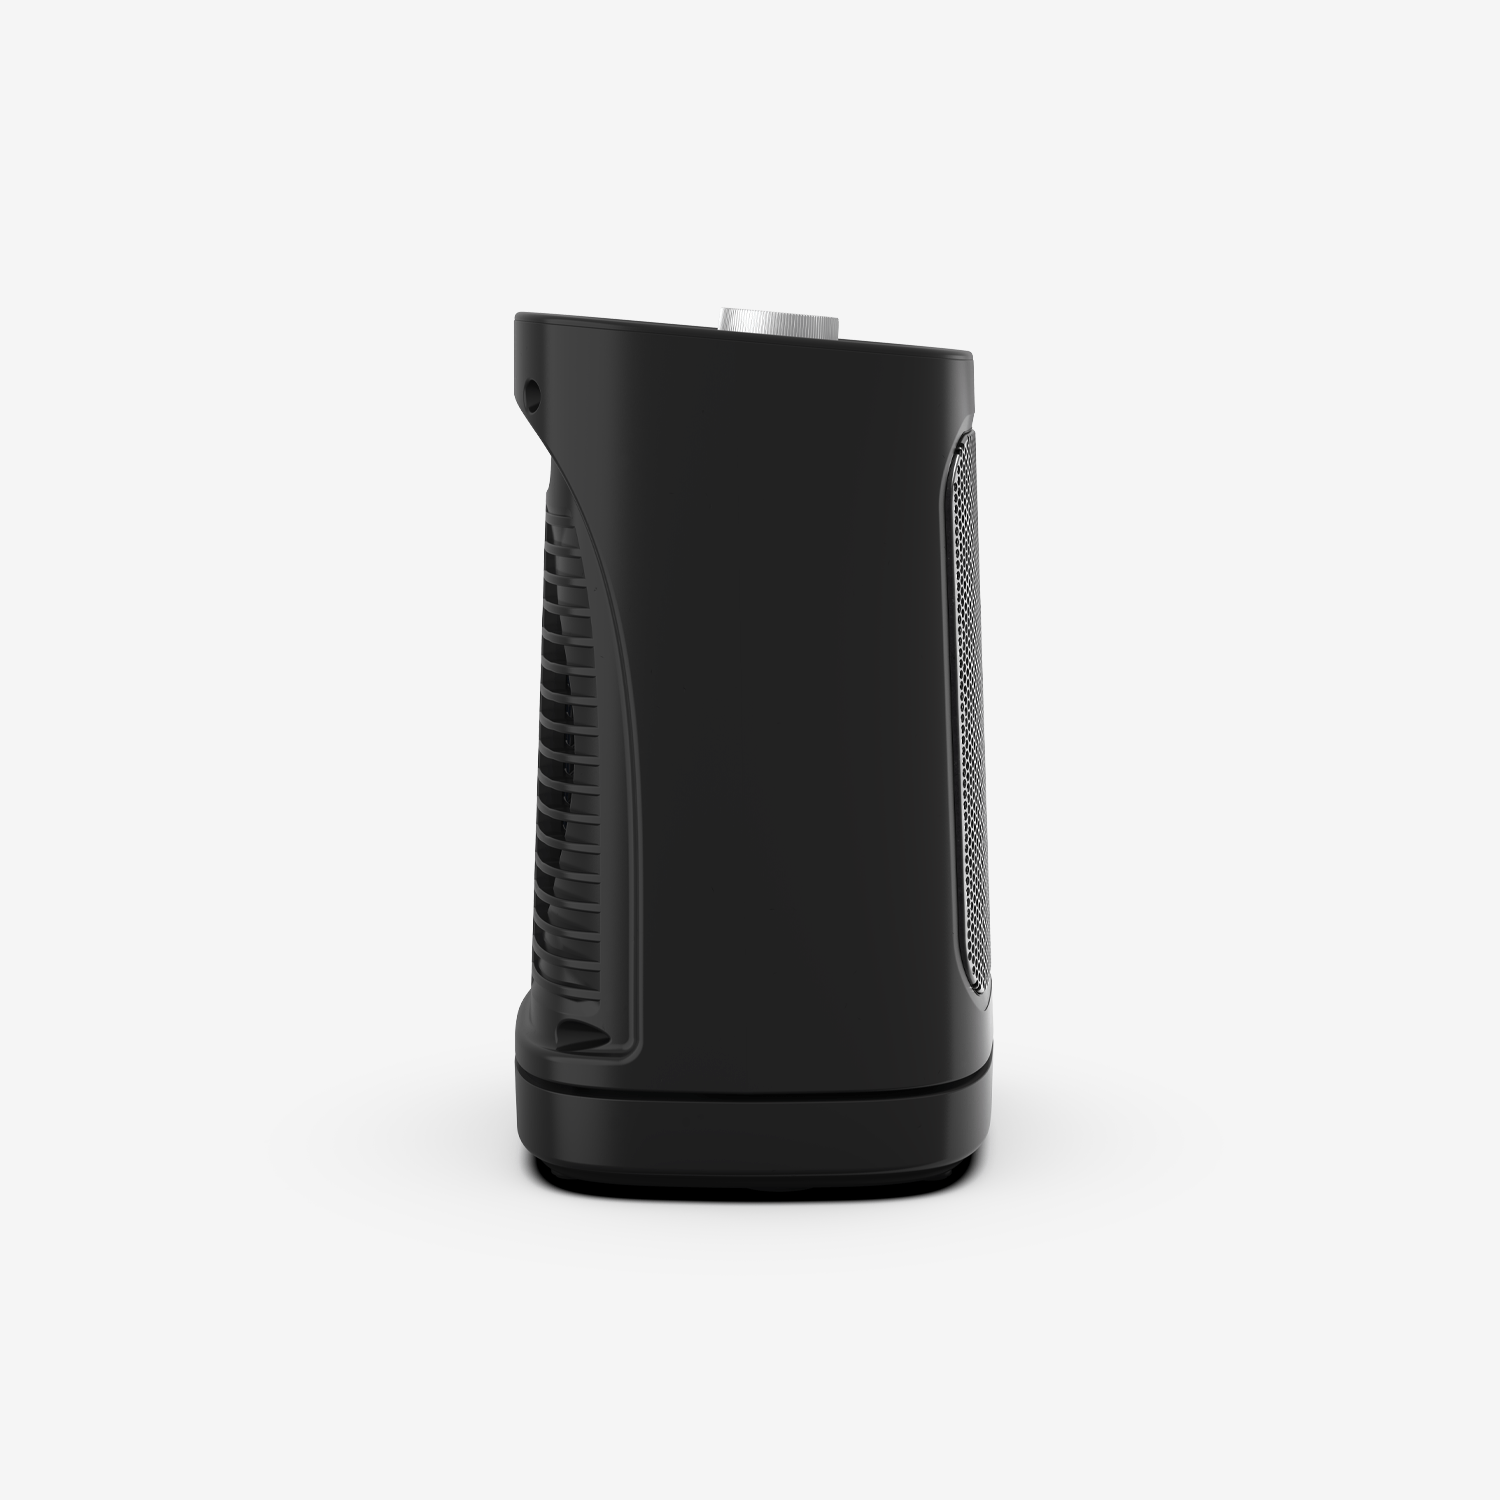 Mini radiateur soufflant en céramique 1800 W - Noir